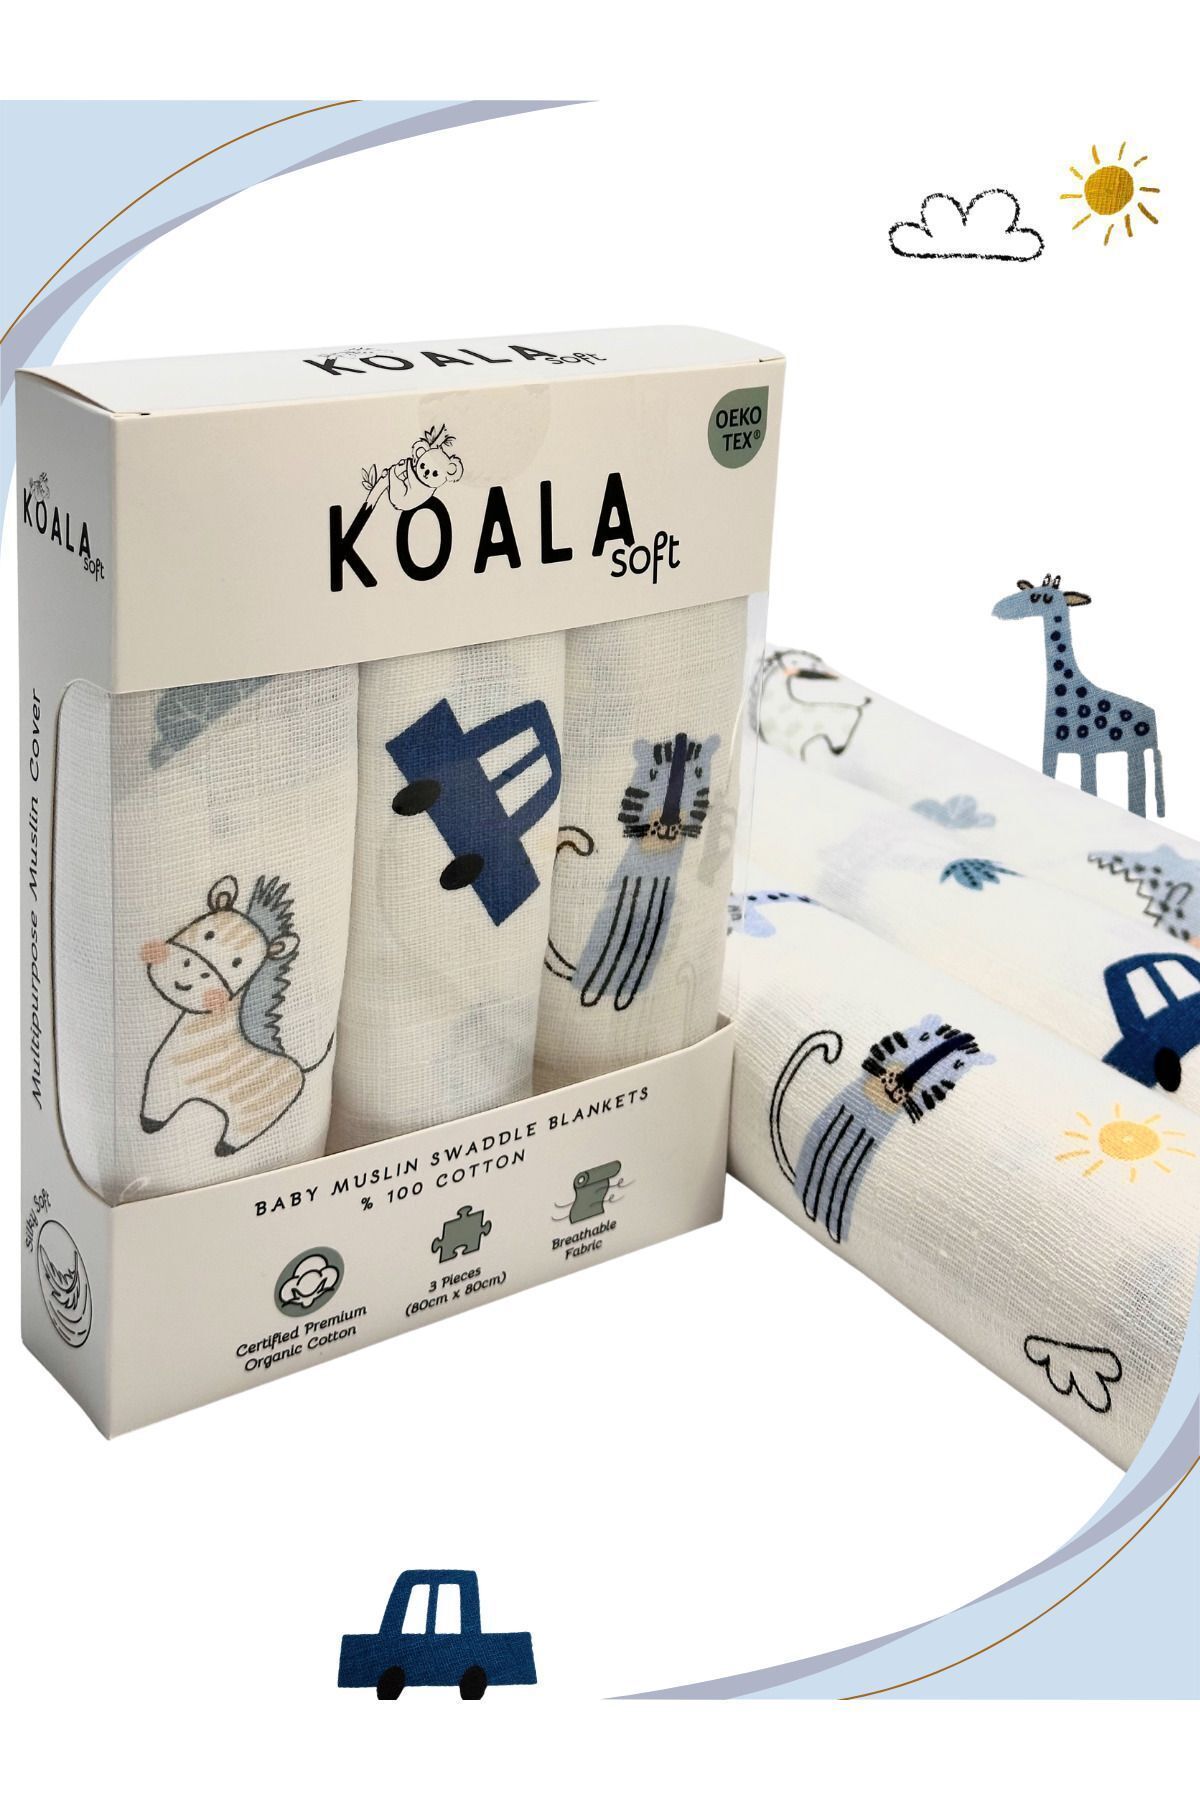 Koala Soft Müslin Battaniye 3'lü Set(80X80CM)|oeko-tex Müslin Kumaş | Yenidoğan Bebek Için Yumuşak Havlu,kundak